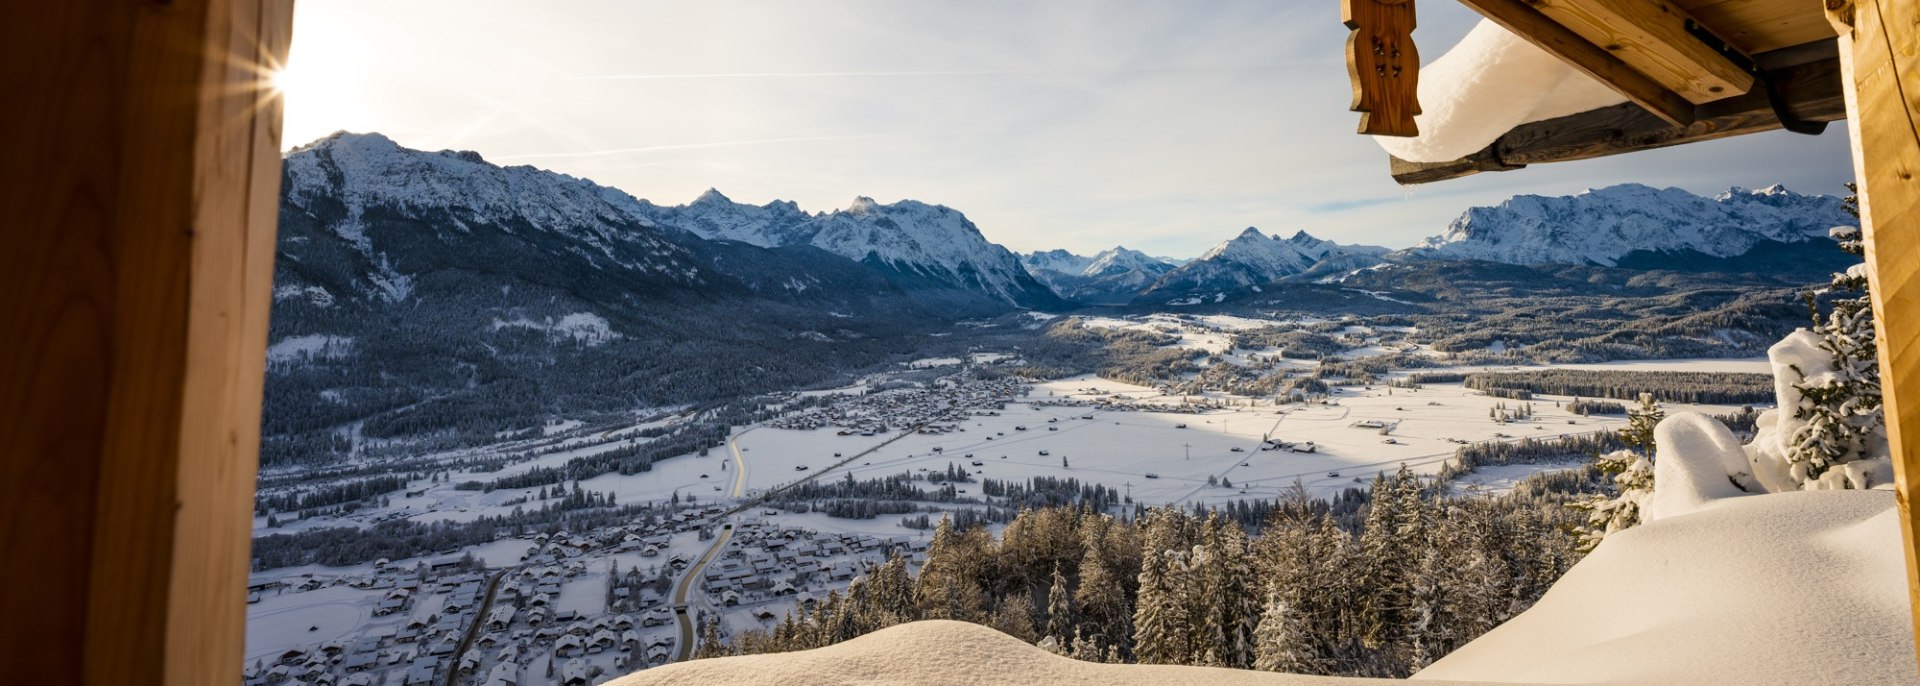 Verschneites Isartal mit Karwendel, eingefangen vom Krepelschrofen bei Wallgau, © Alpenwelt Karwendel | Paul Wolf